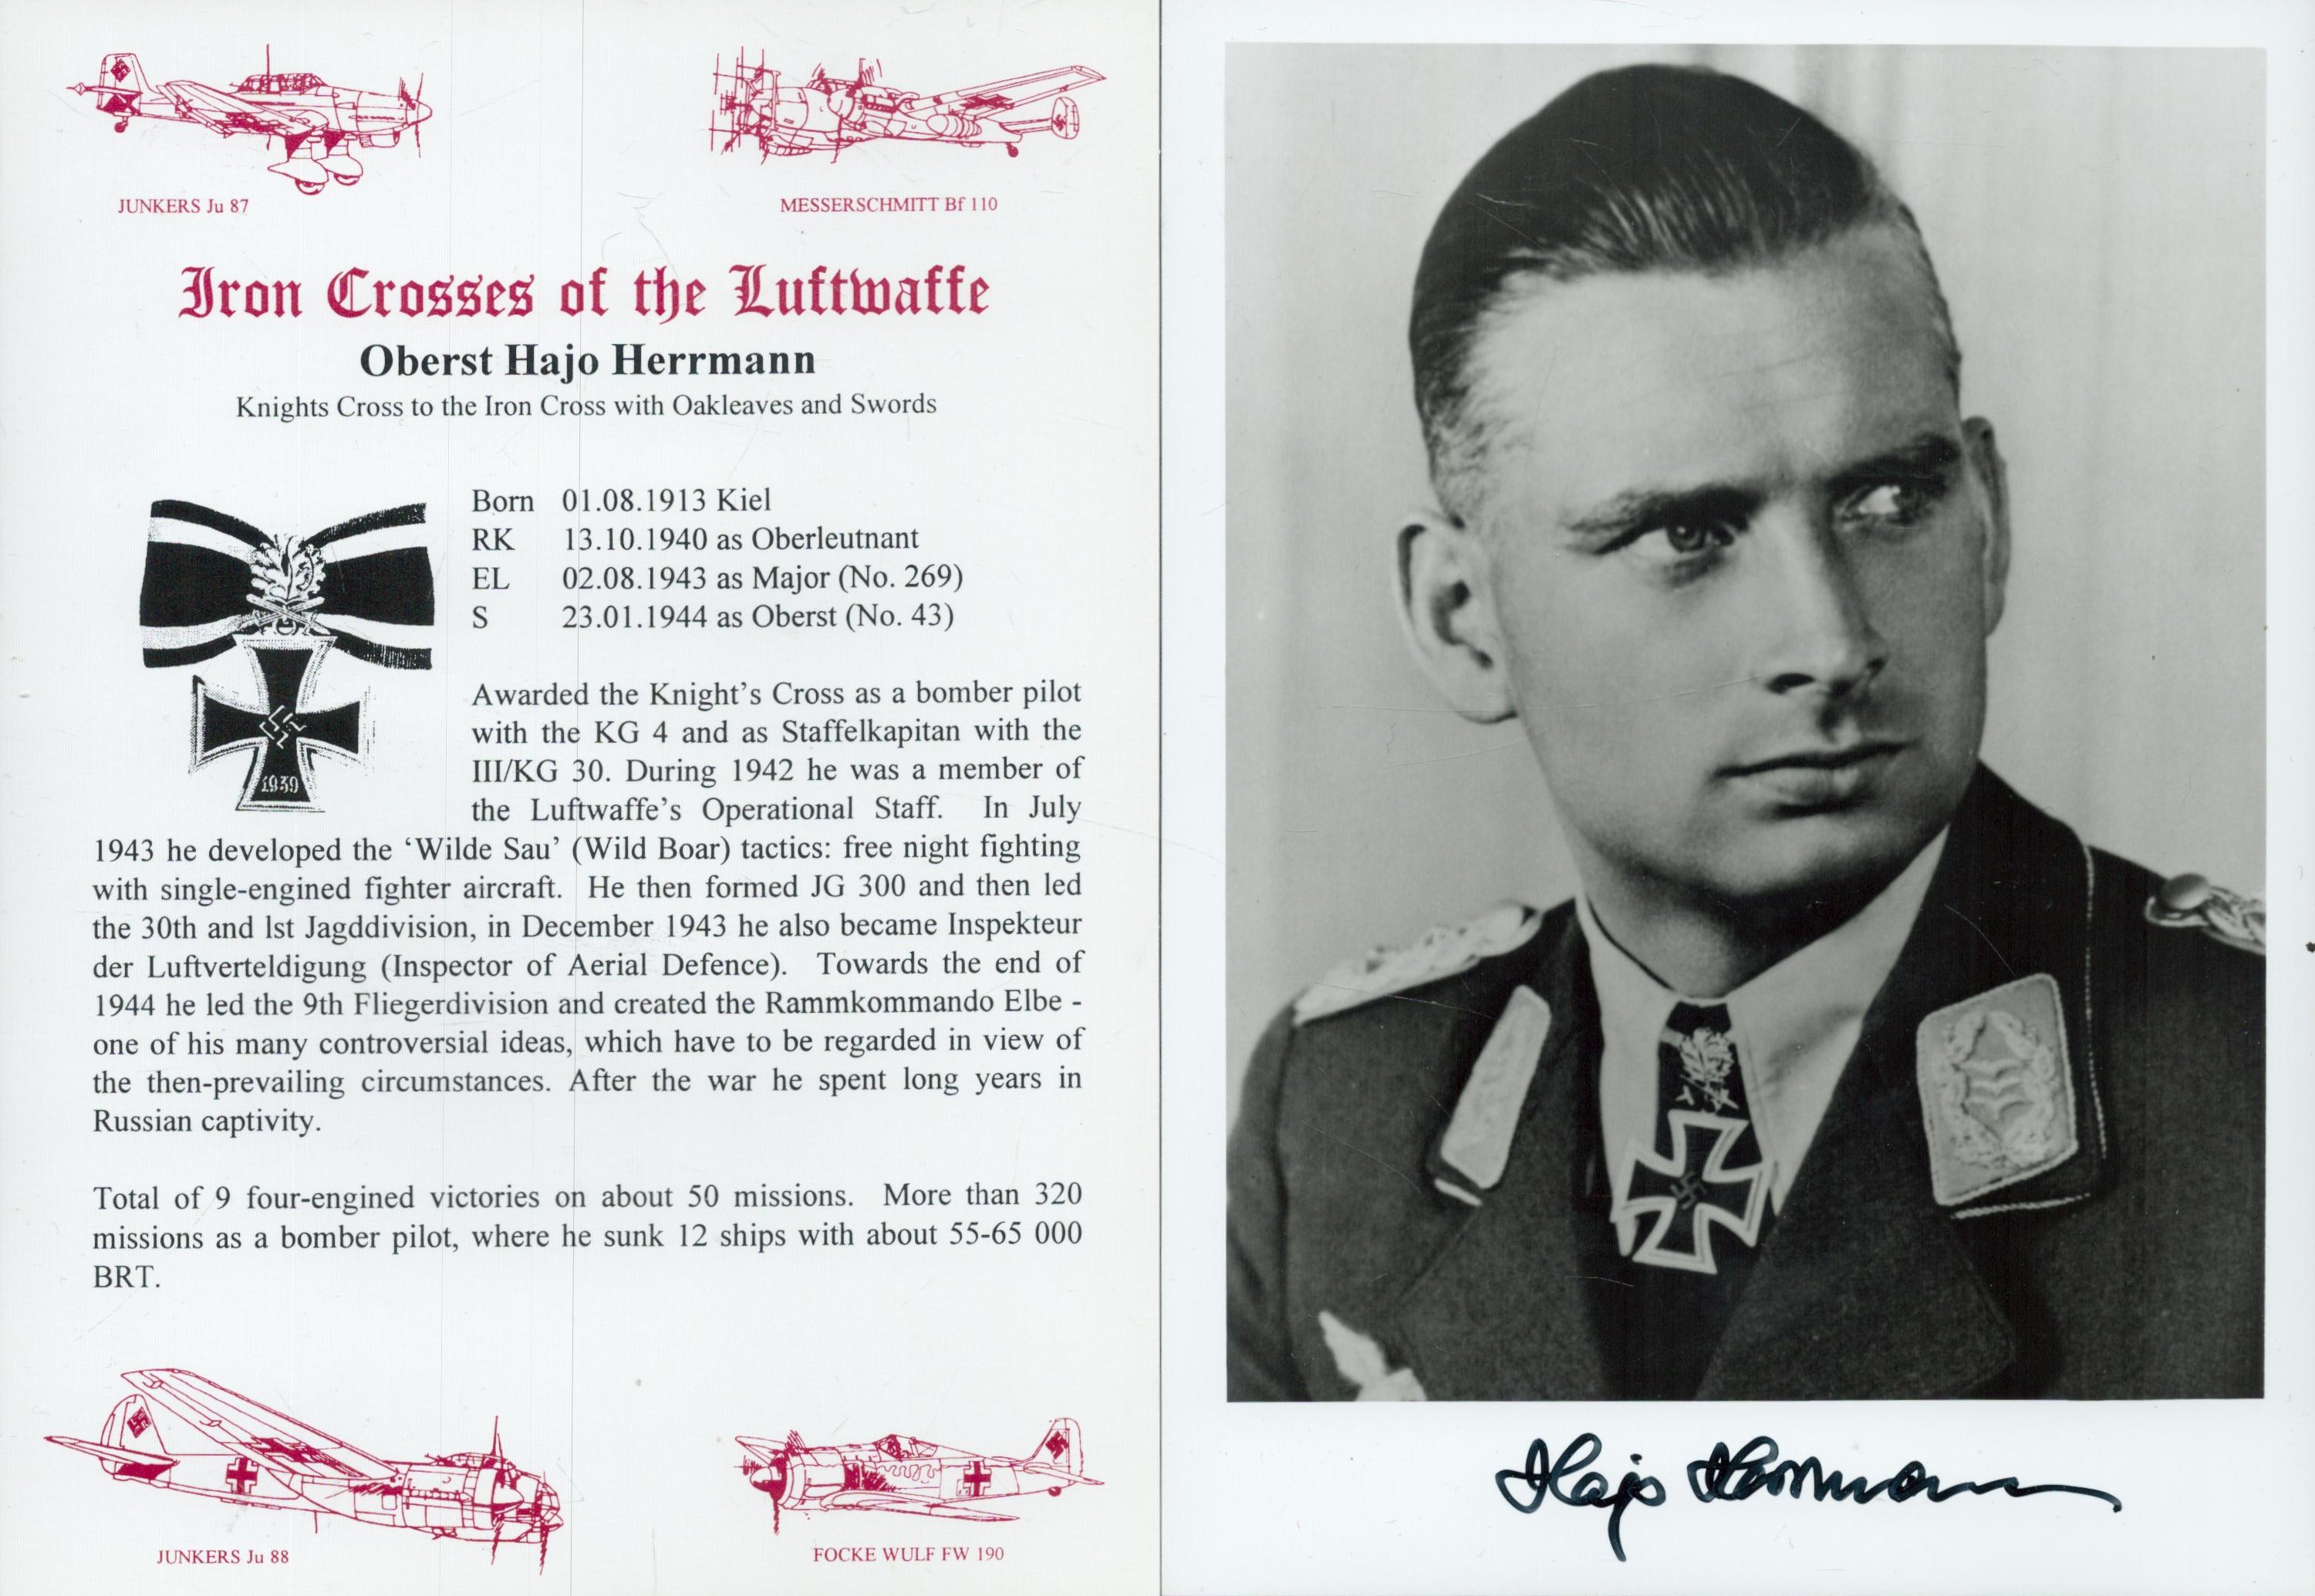 WW2 Luftwaffe fighter ace Oberst Hajo Herrmann KC OL S signed 7 x 5 inch b/w portrait photo along